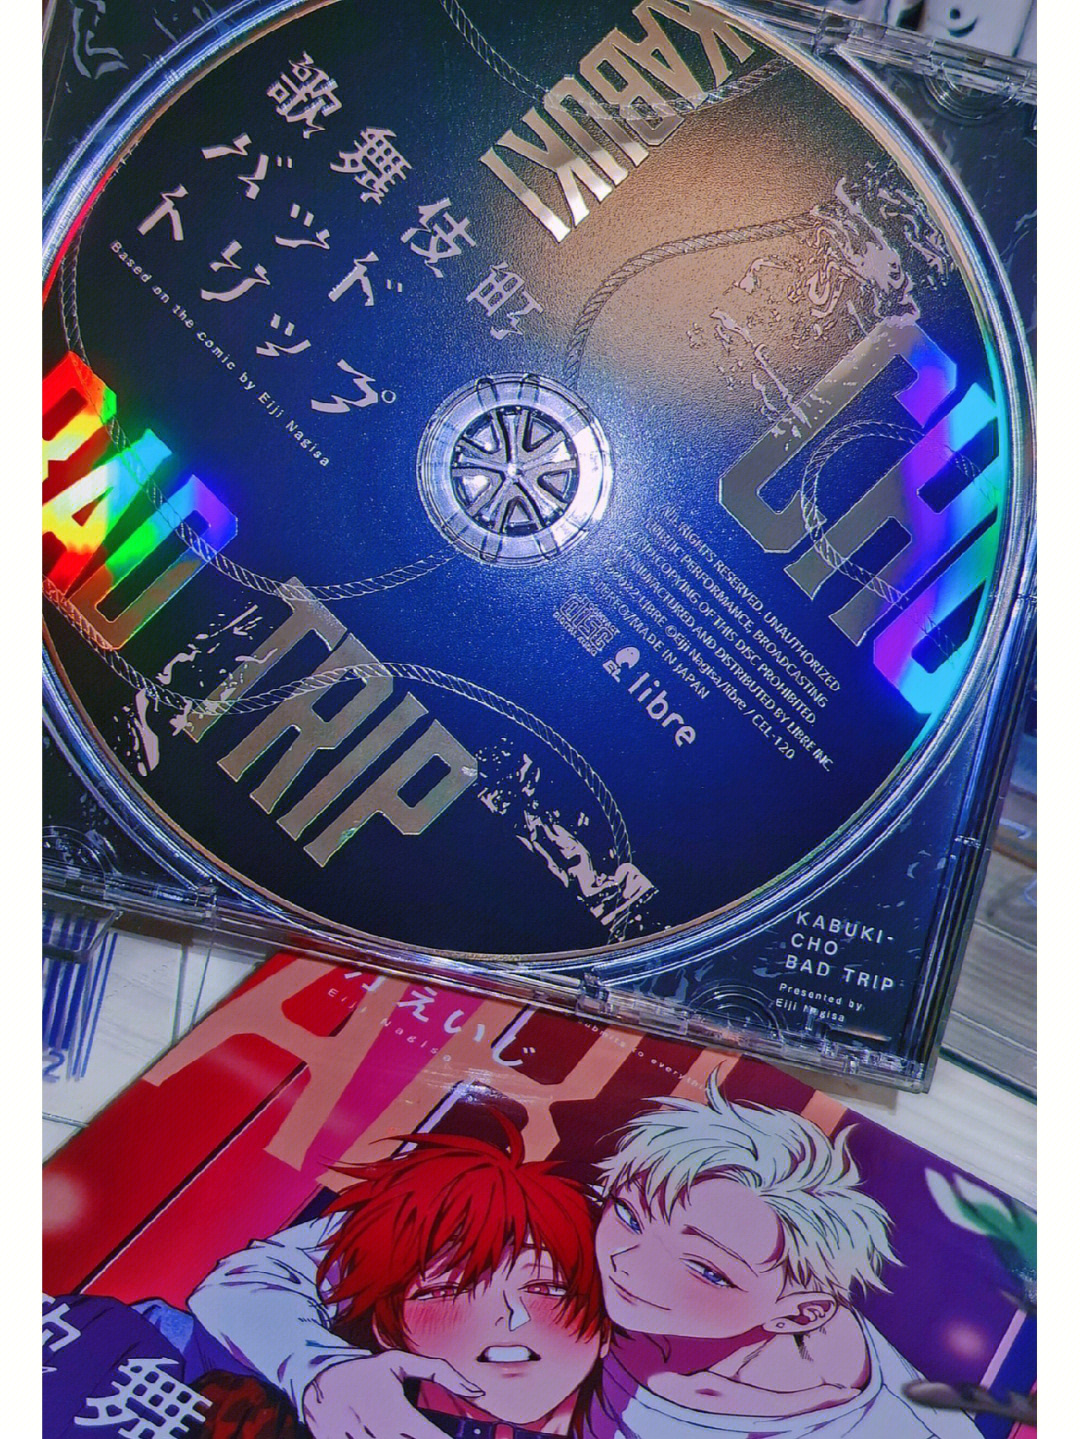 超炫酷的歌舞伎町广播剧cd